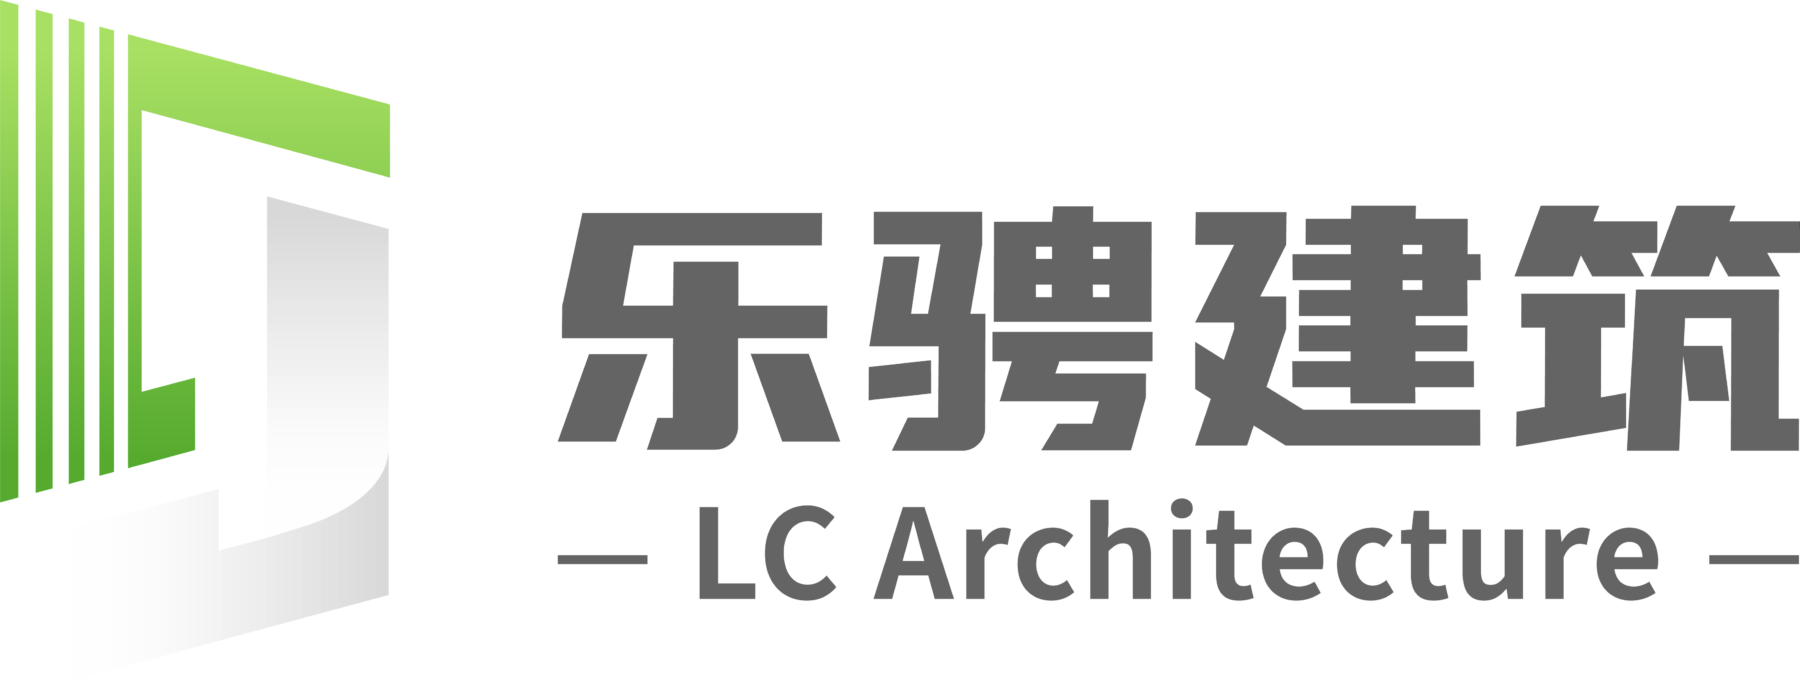 LC Architecture logo